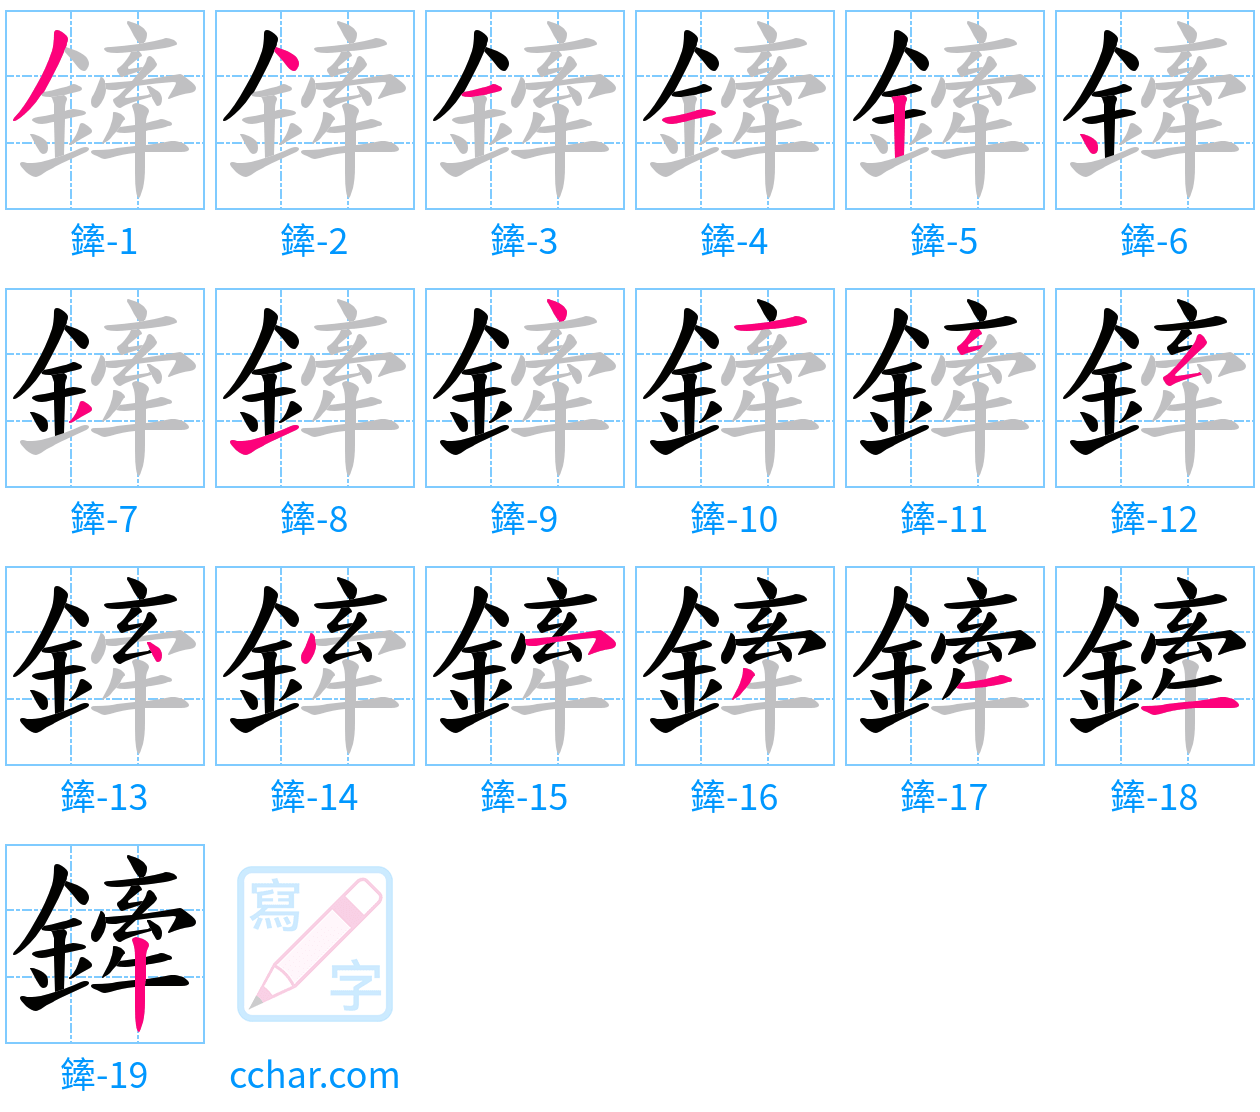 鏲 stroke order step-by-step diagram